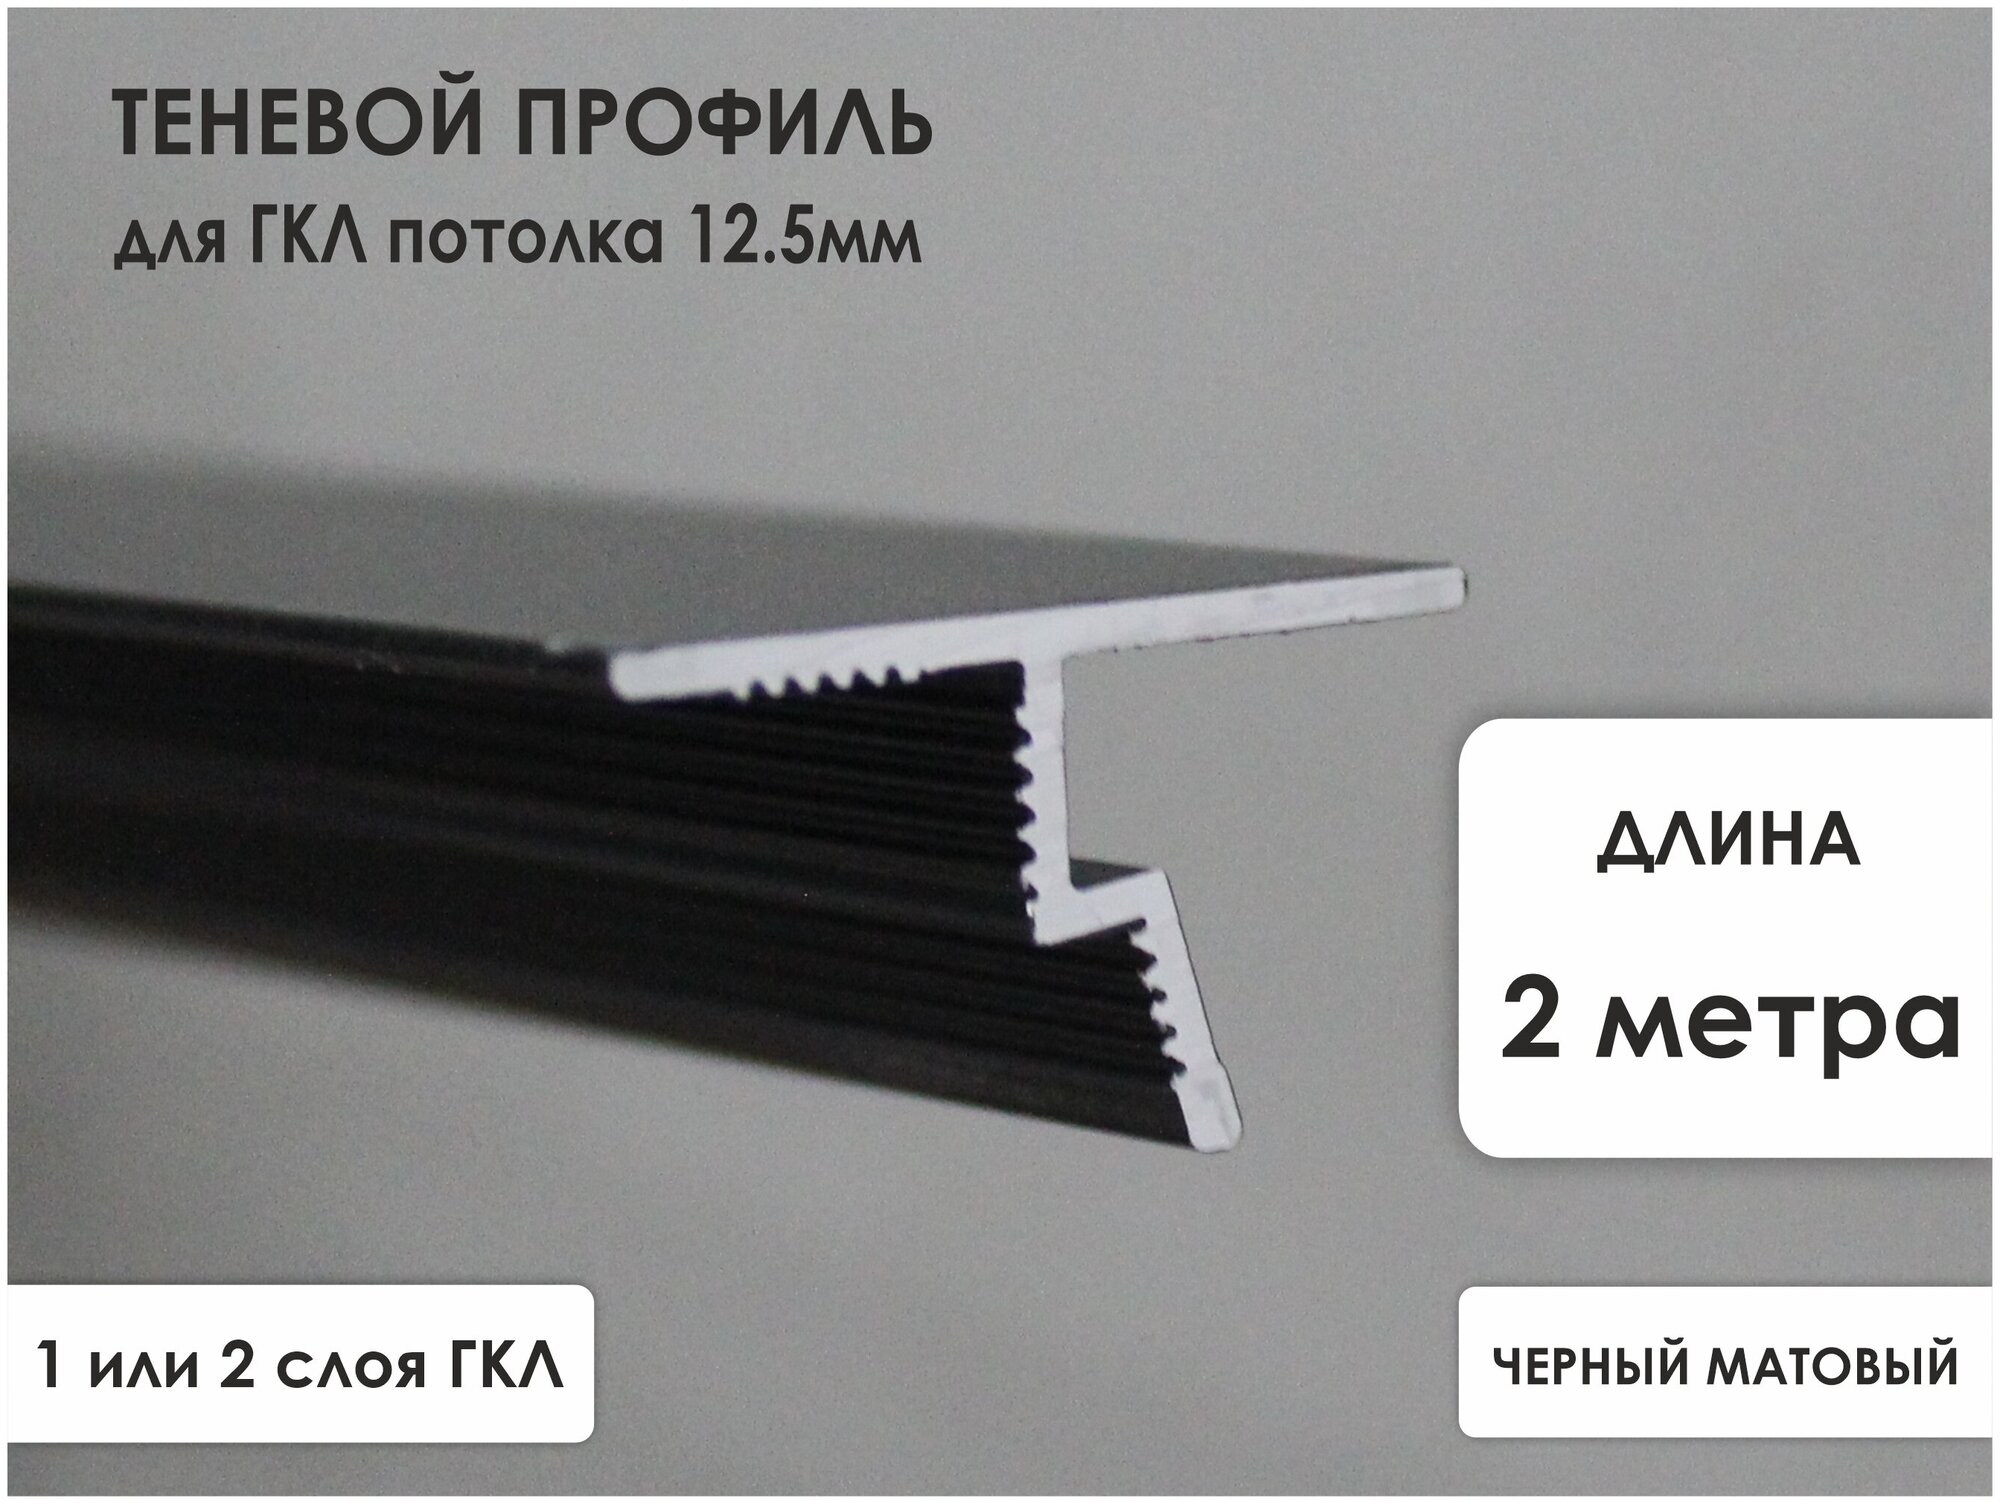 Теневые профили для натяжных потолков: швы на гипсокартоне с подсветкой, Flexy и EuroKraab, потолки с зазором